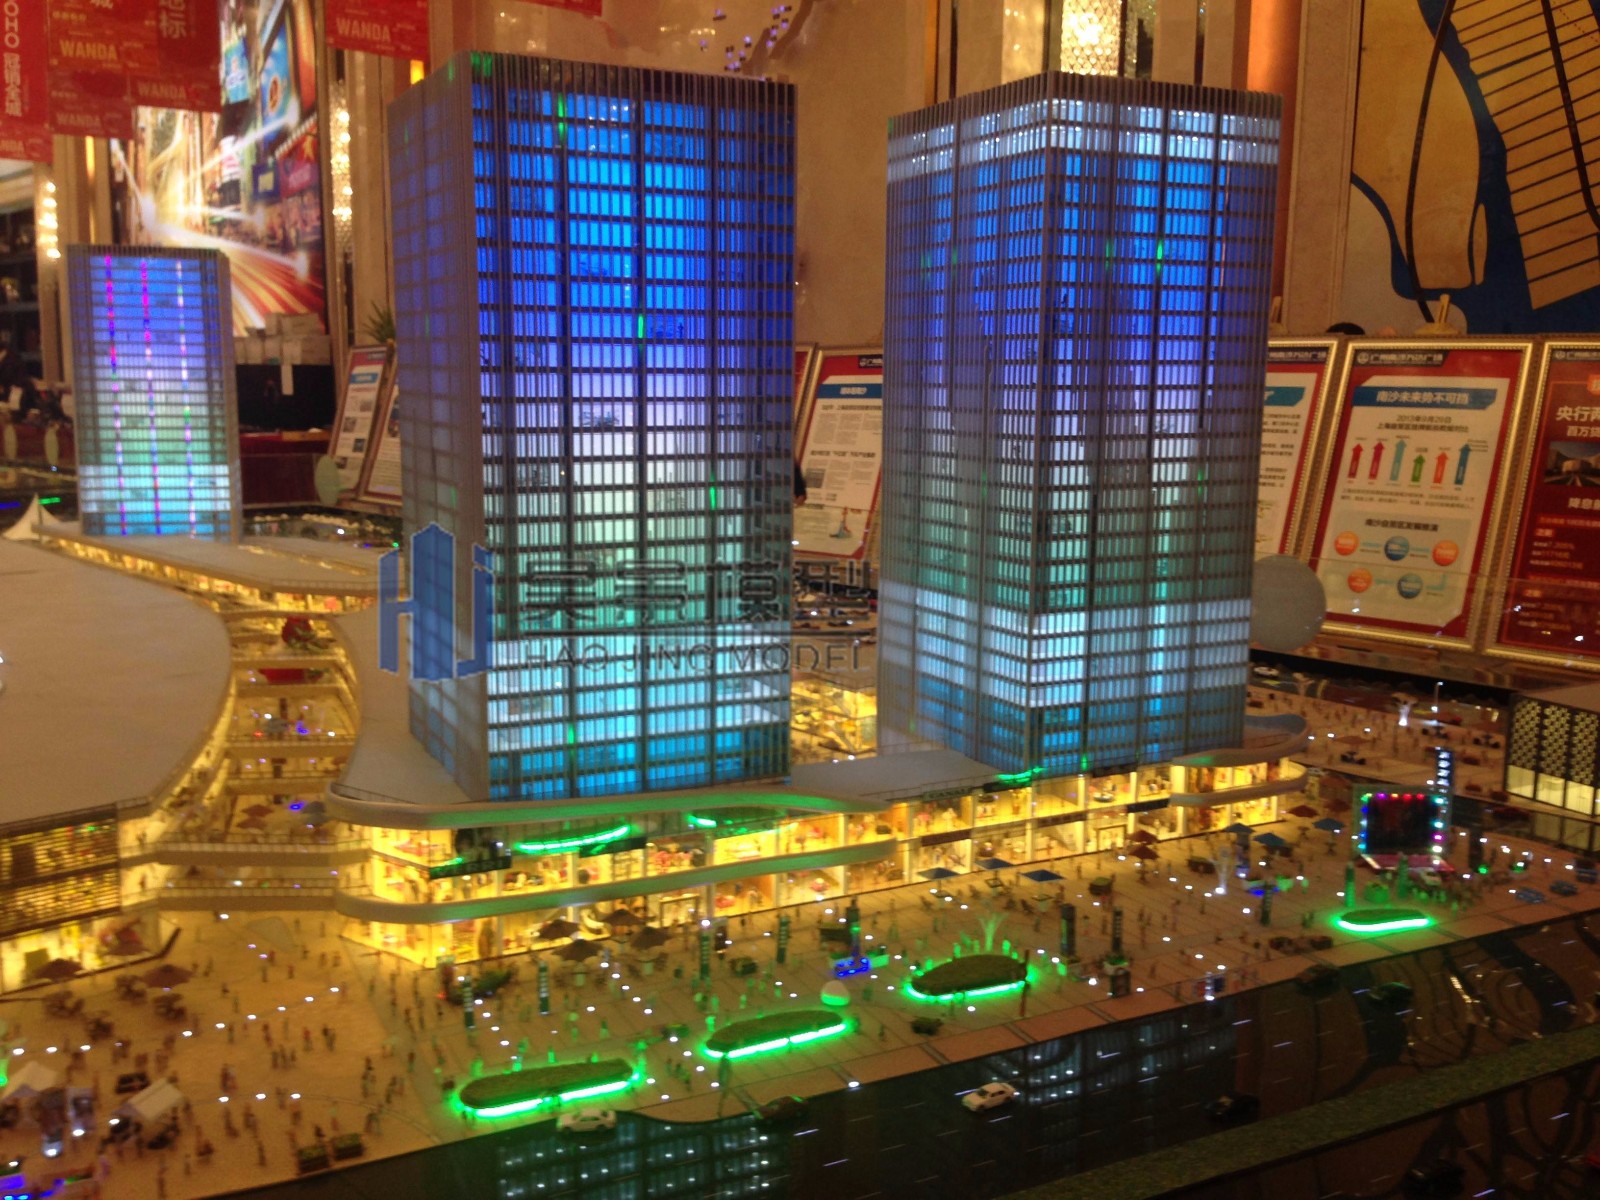 万达广场大型商场模型